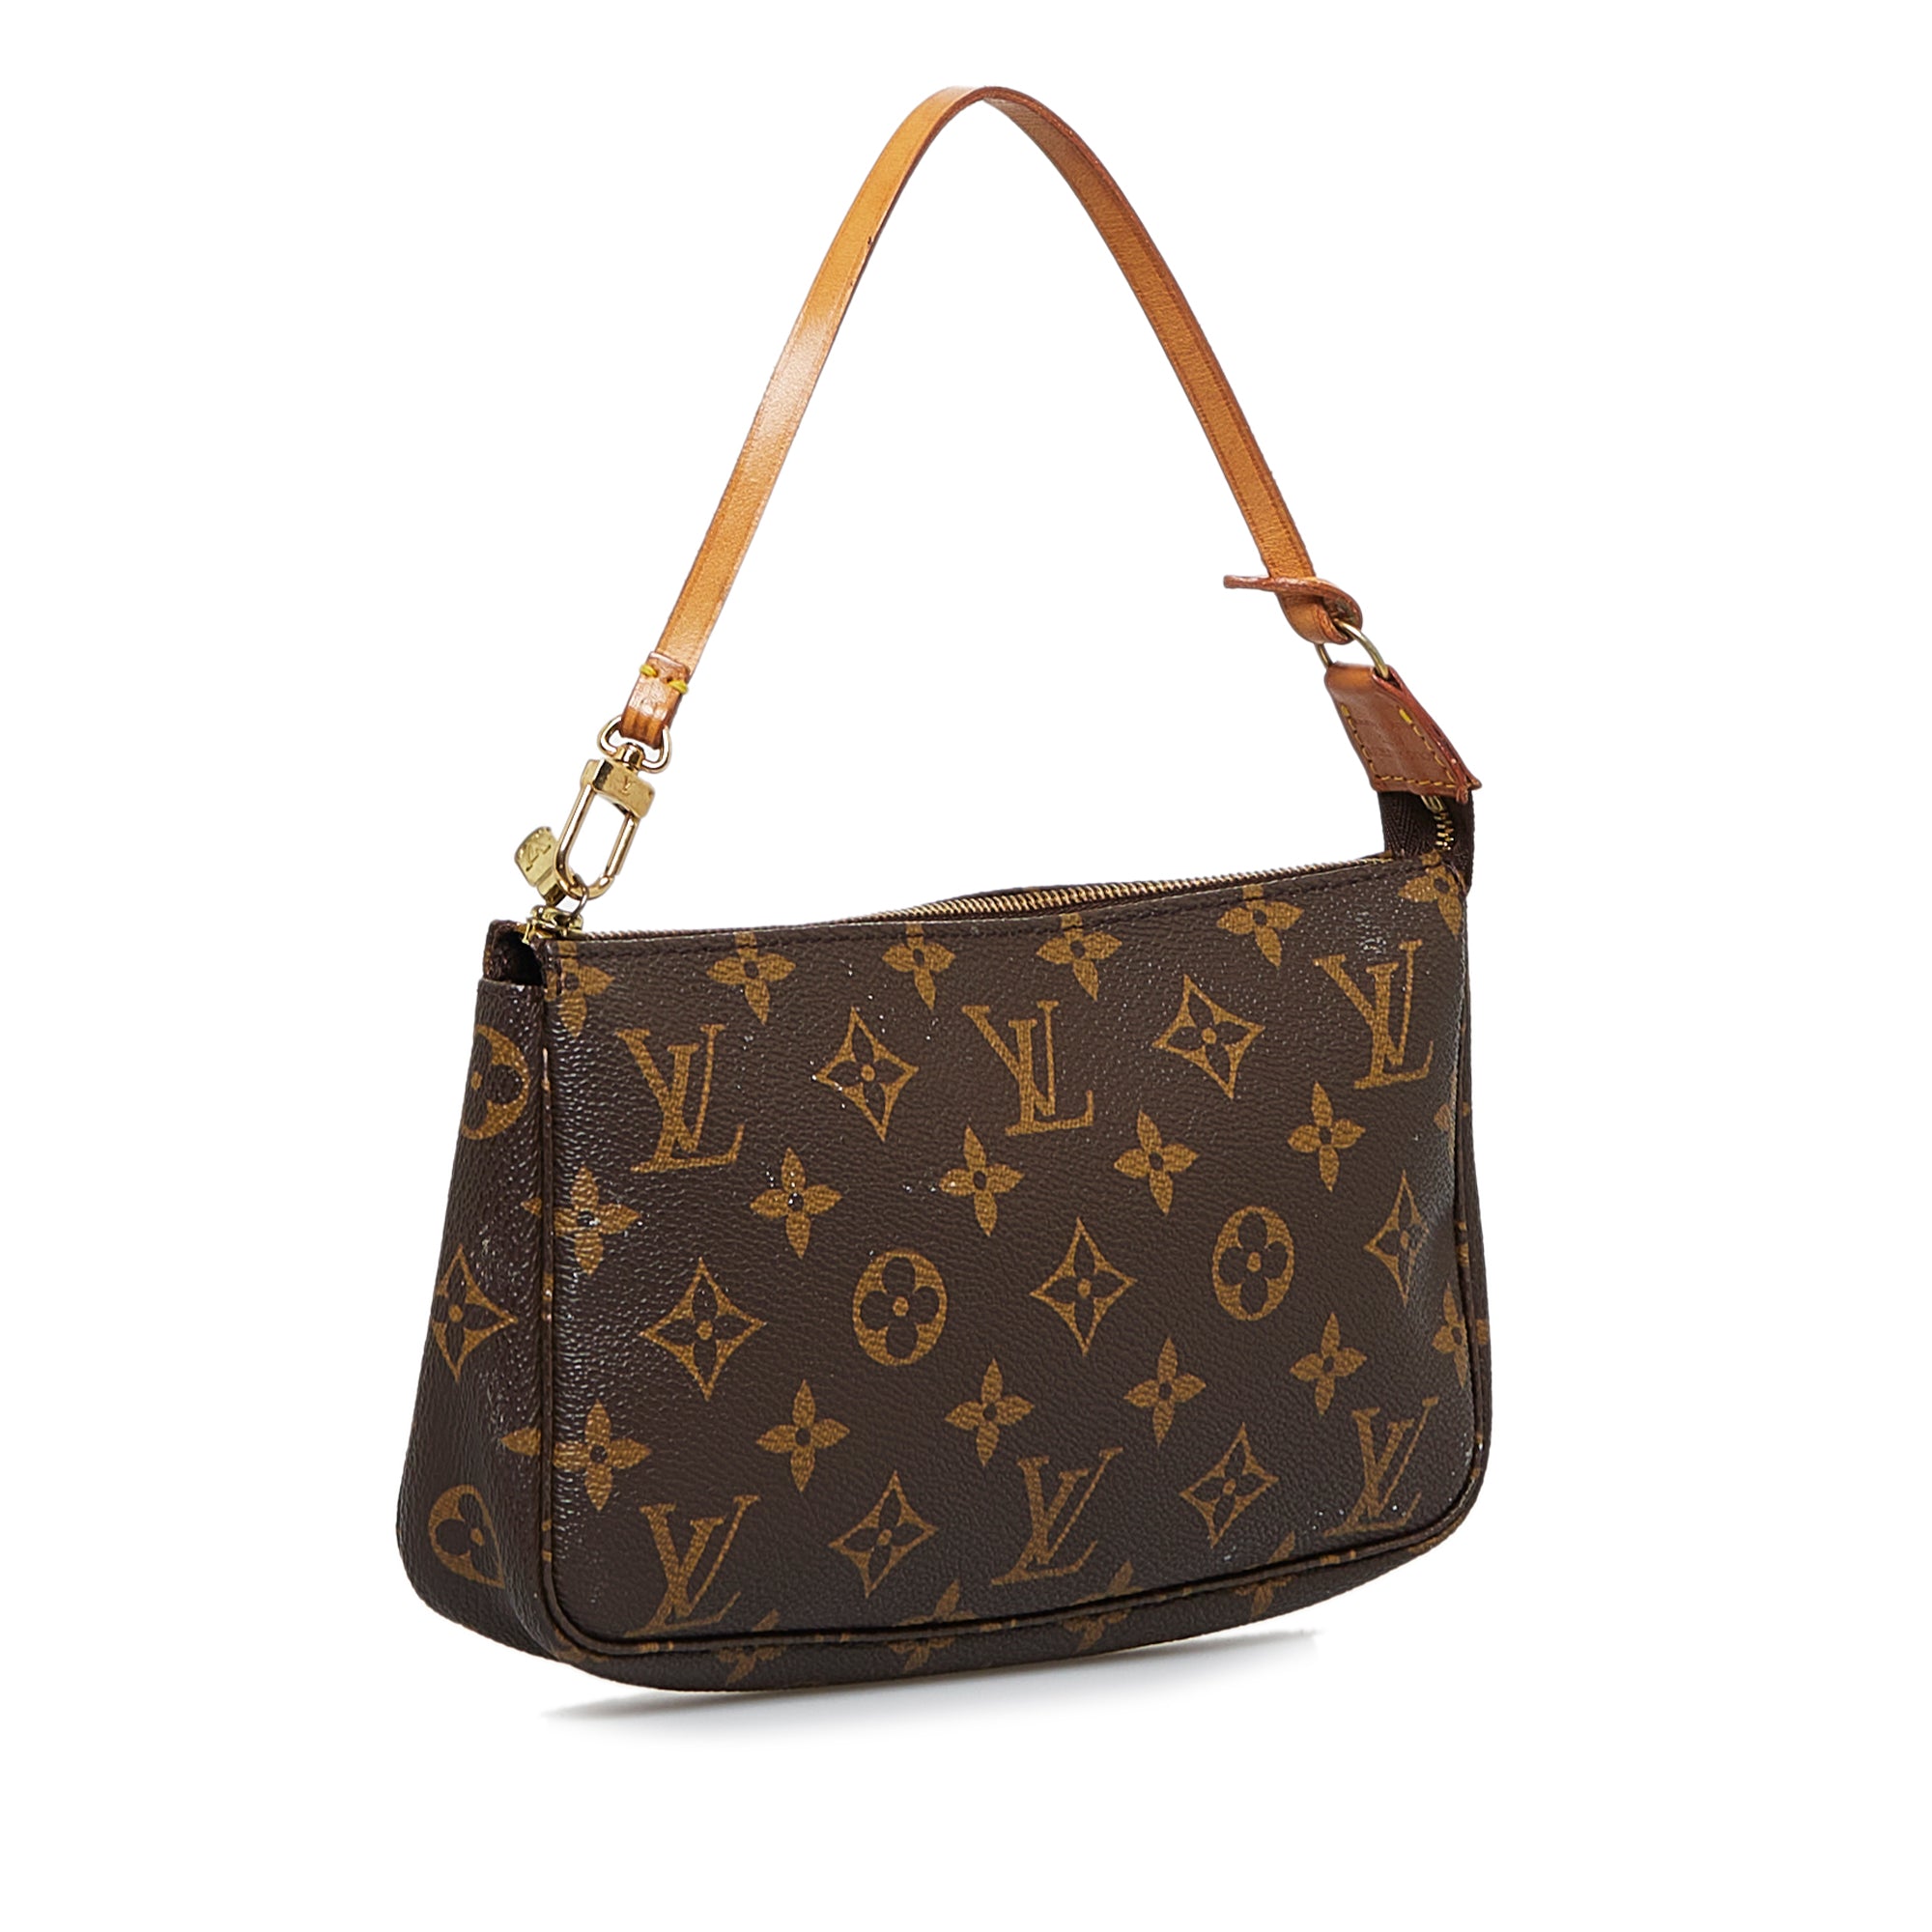 Louis Vuitton Baguette Handbags